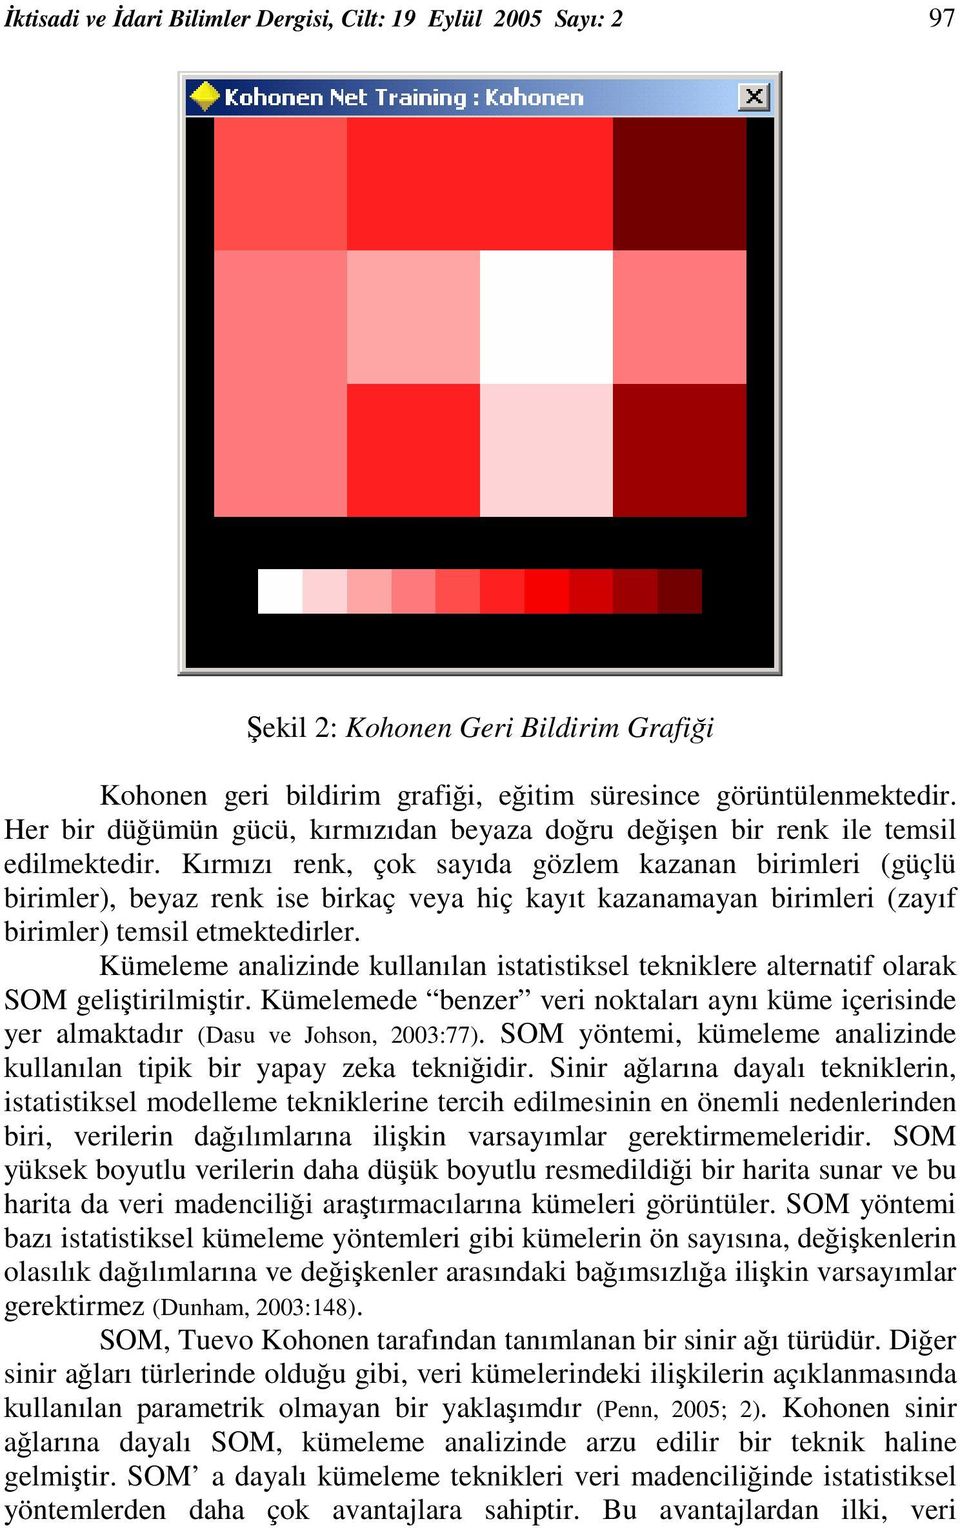 Kırmızı renk, çok sayıda gözlem kazanan birimleri (güçlü birimler), beyaz renk ise birkaç veya hiç kayıt kazanamayan birimleri (zayıf birimler) temsil etmektedirler.